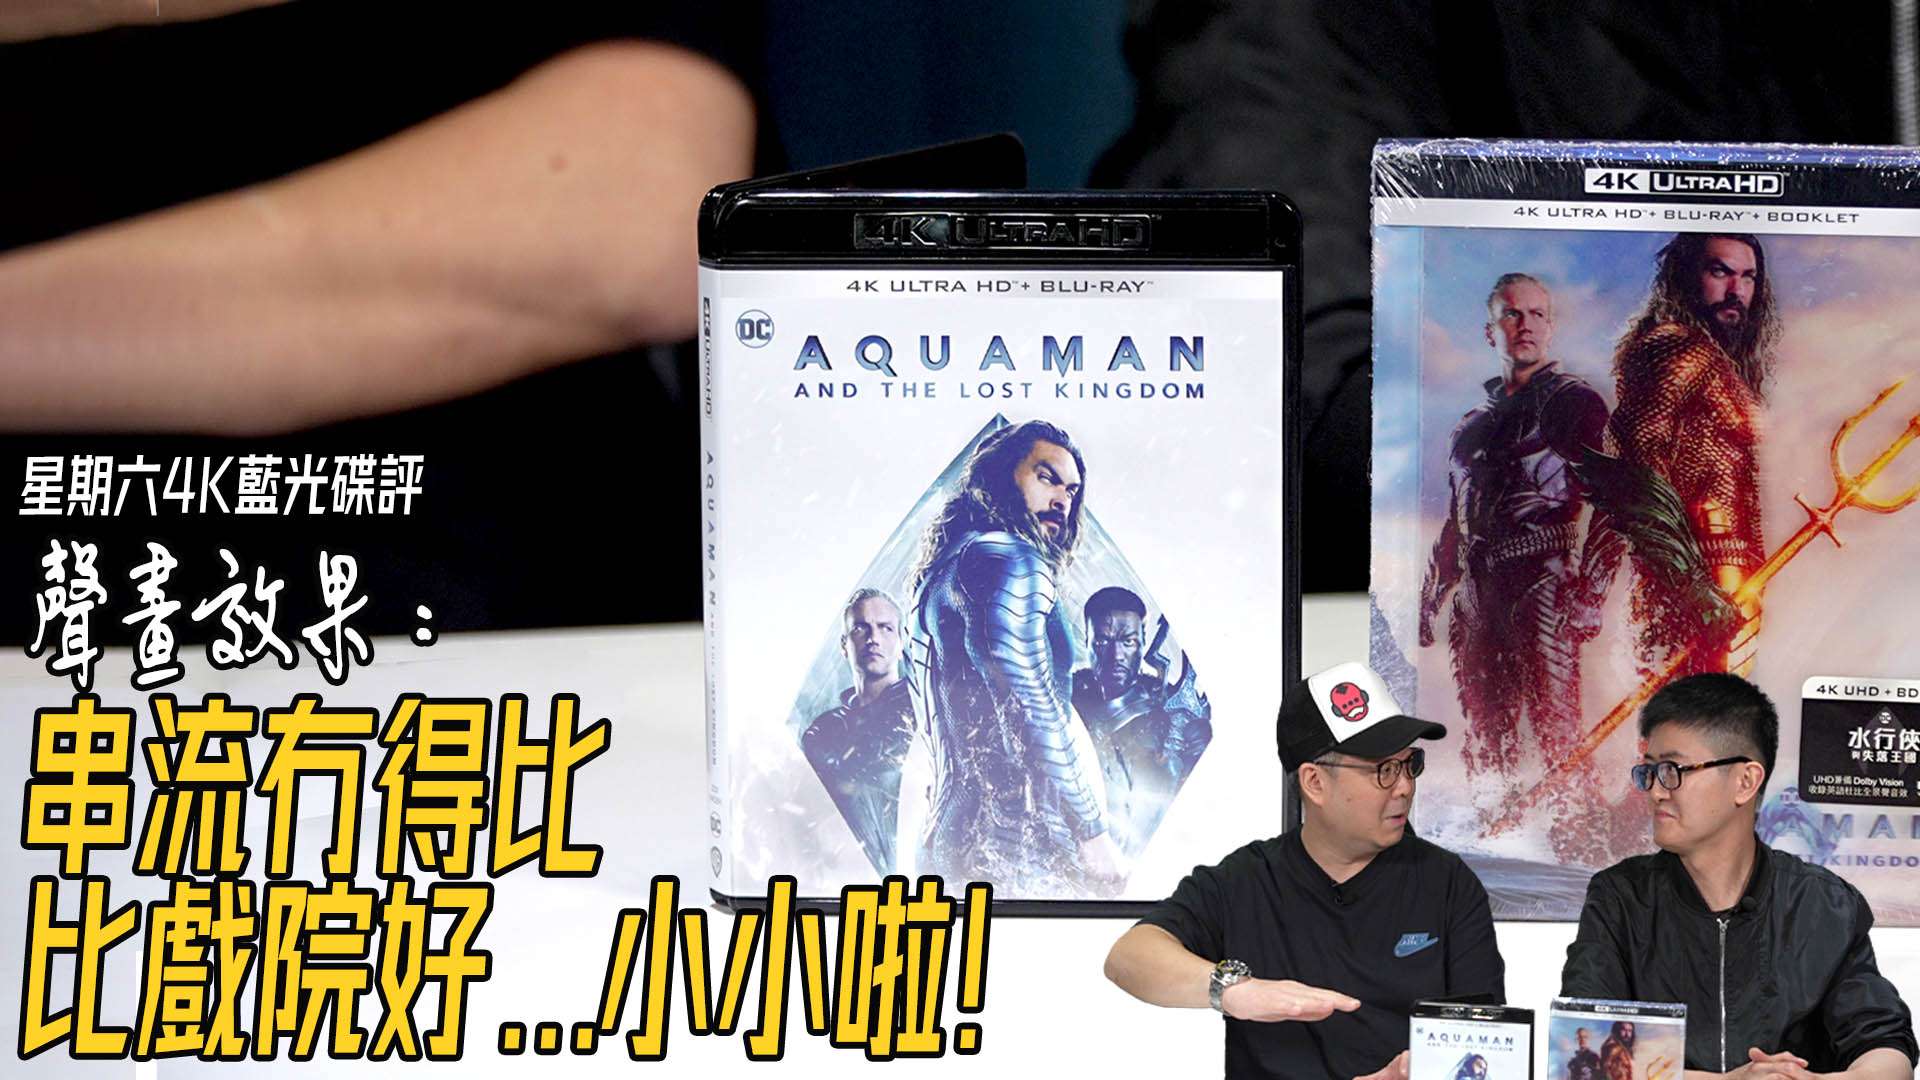 Aquaman 4K Review forum copy.jpg